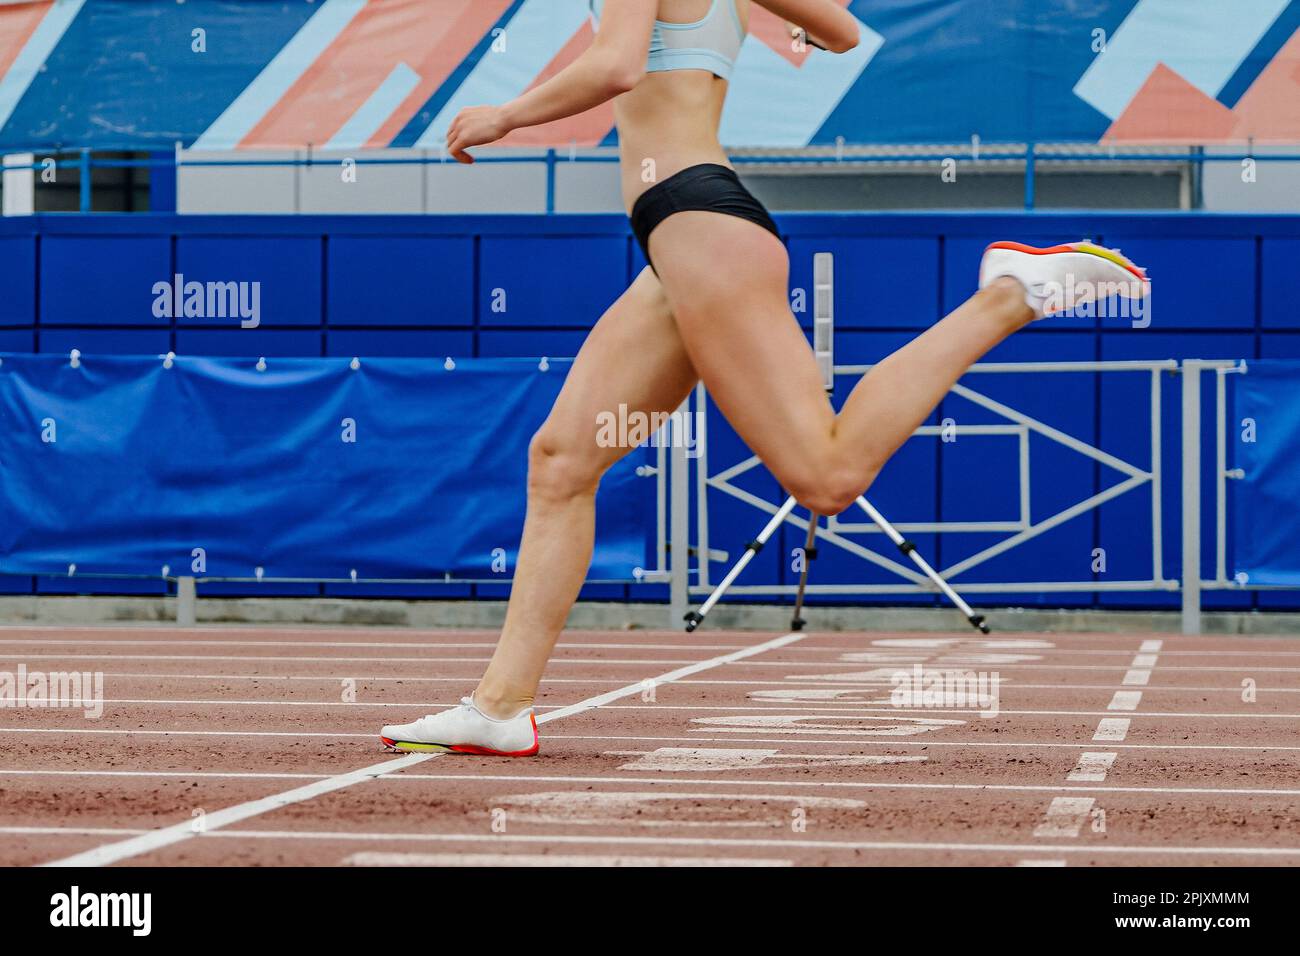 l'atleta femminile attraversa la linea finale della corsa sprint, i campionati estivi di atletica allo stadio, le gambe donna runner Foto Stock